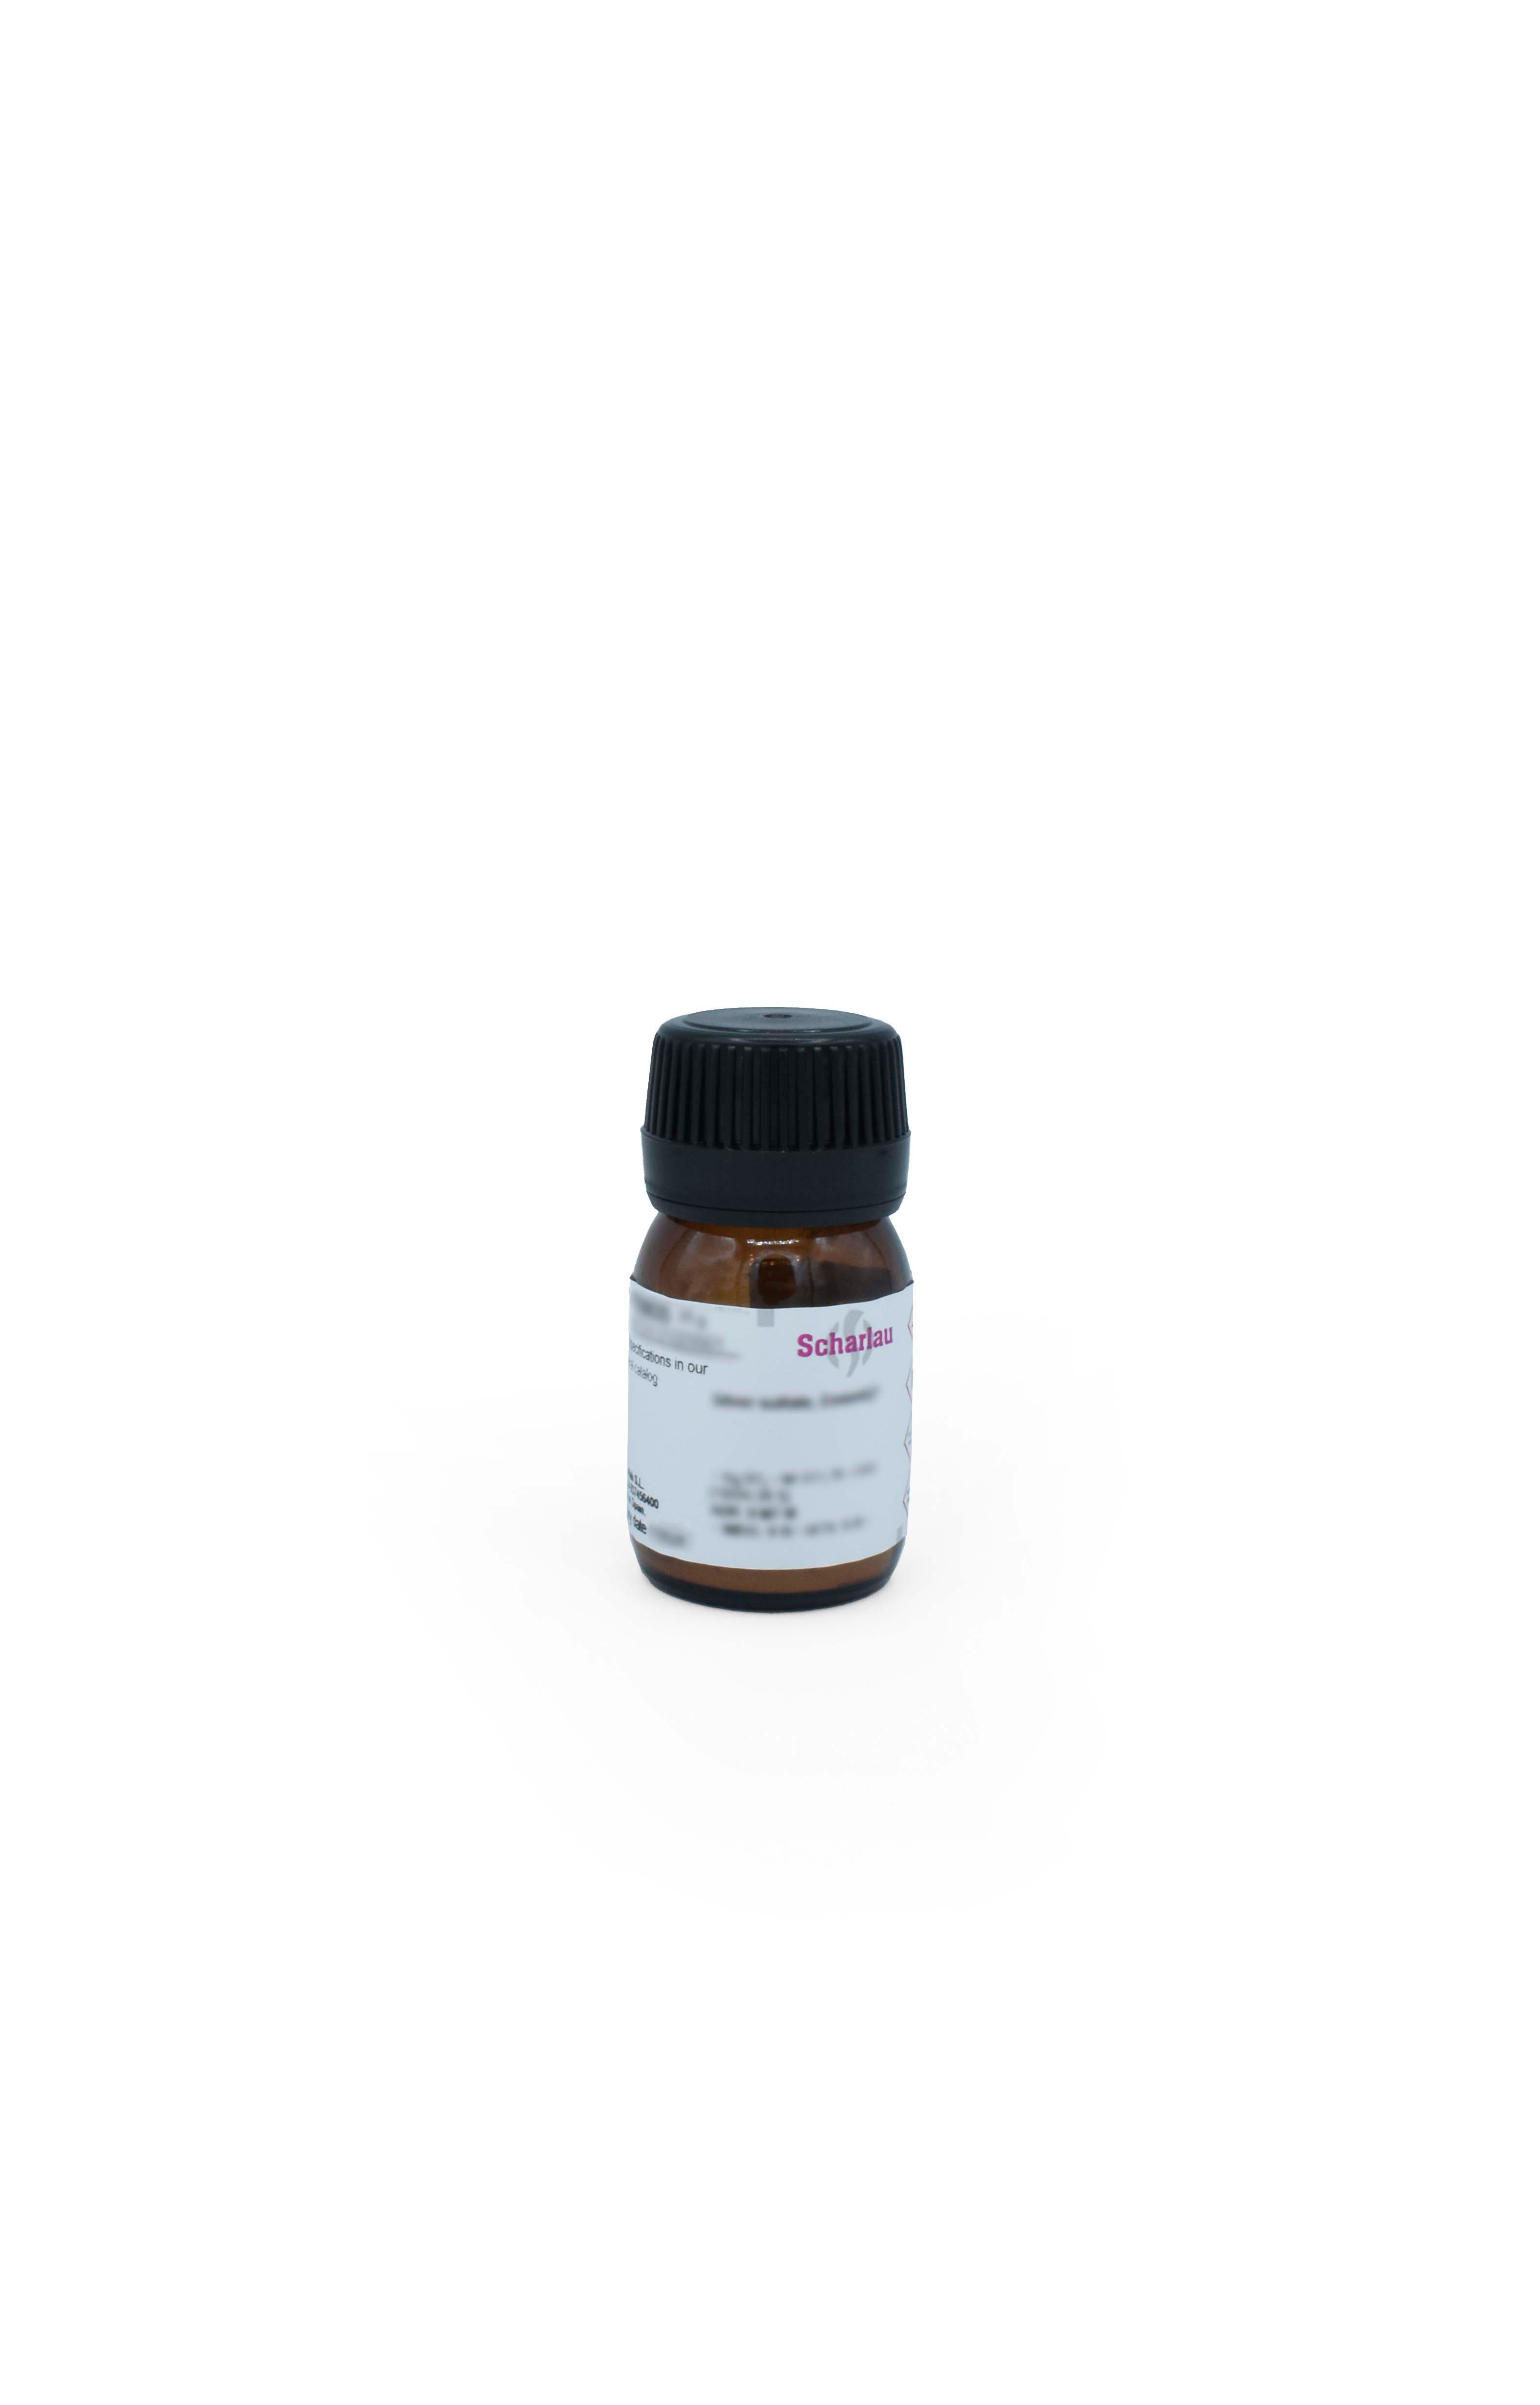 Vitamin B6 hydrochloride, Adermine hydrochloride, Pyridoxine hydrochloride